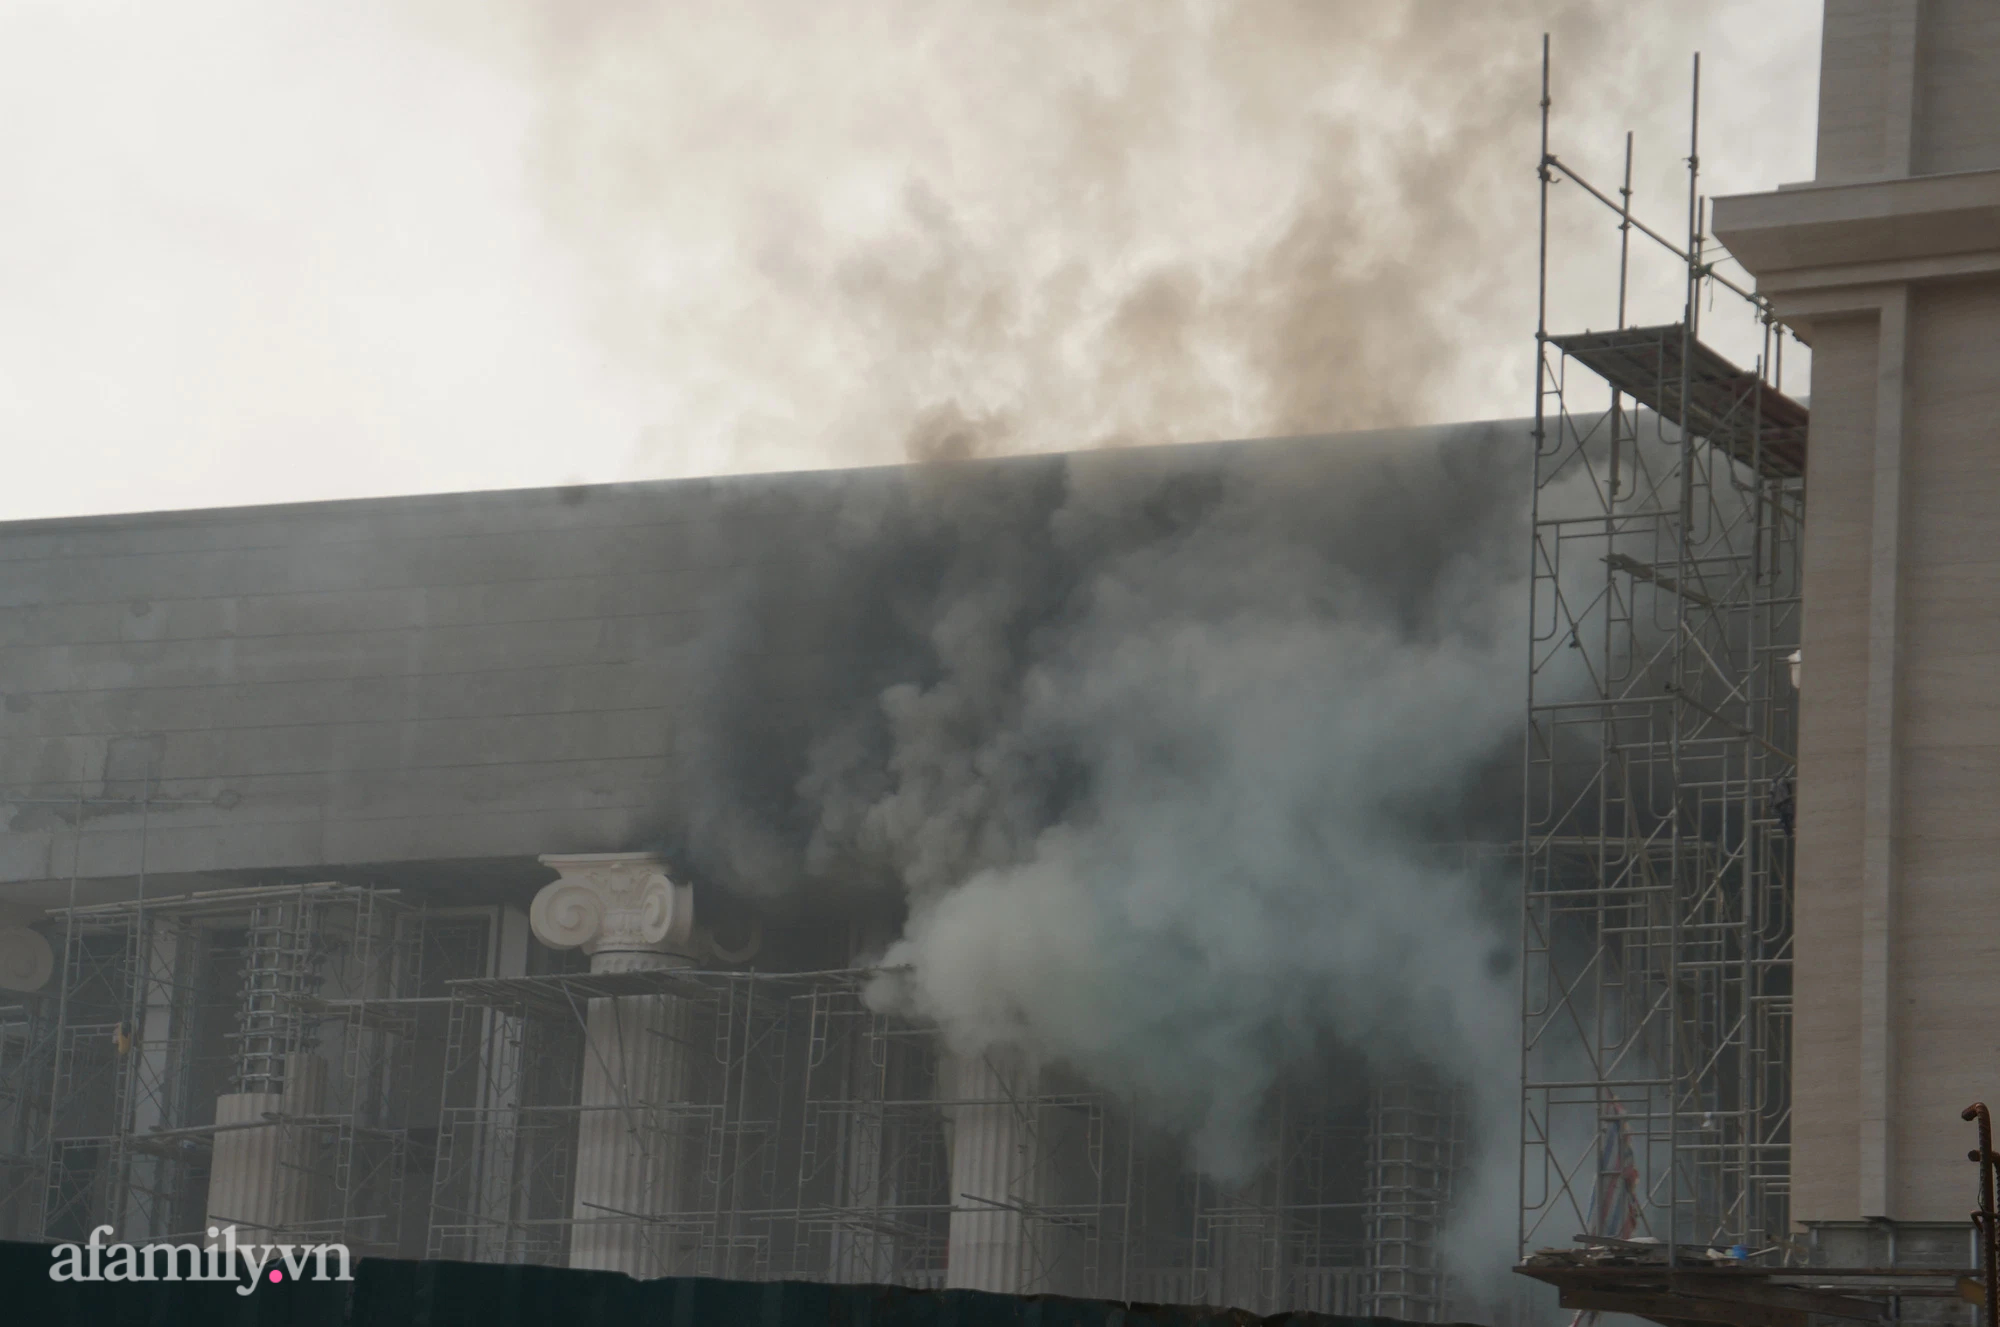 NÓNG: Cháy lớn tại trụ sở Tòa án Nhân dân TP Hà Nội đang xây dựng - ảnh 5